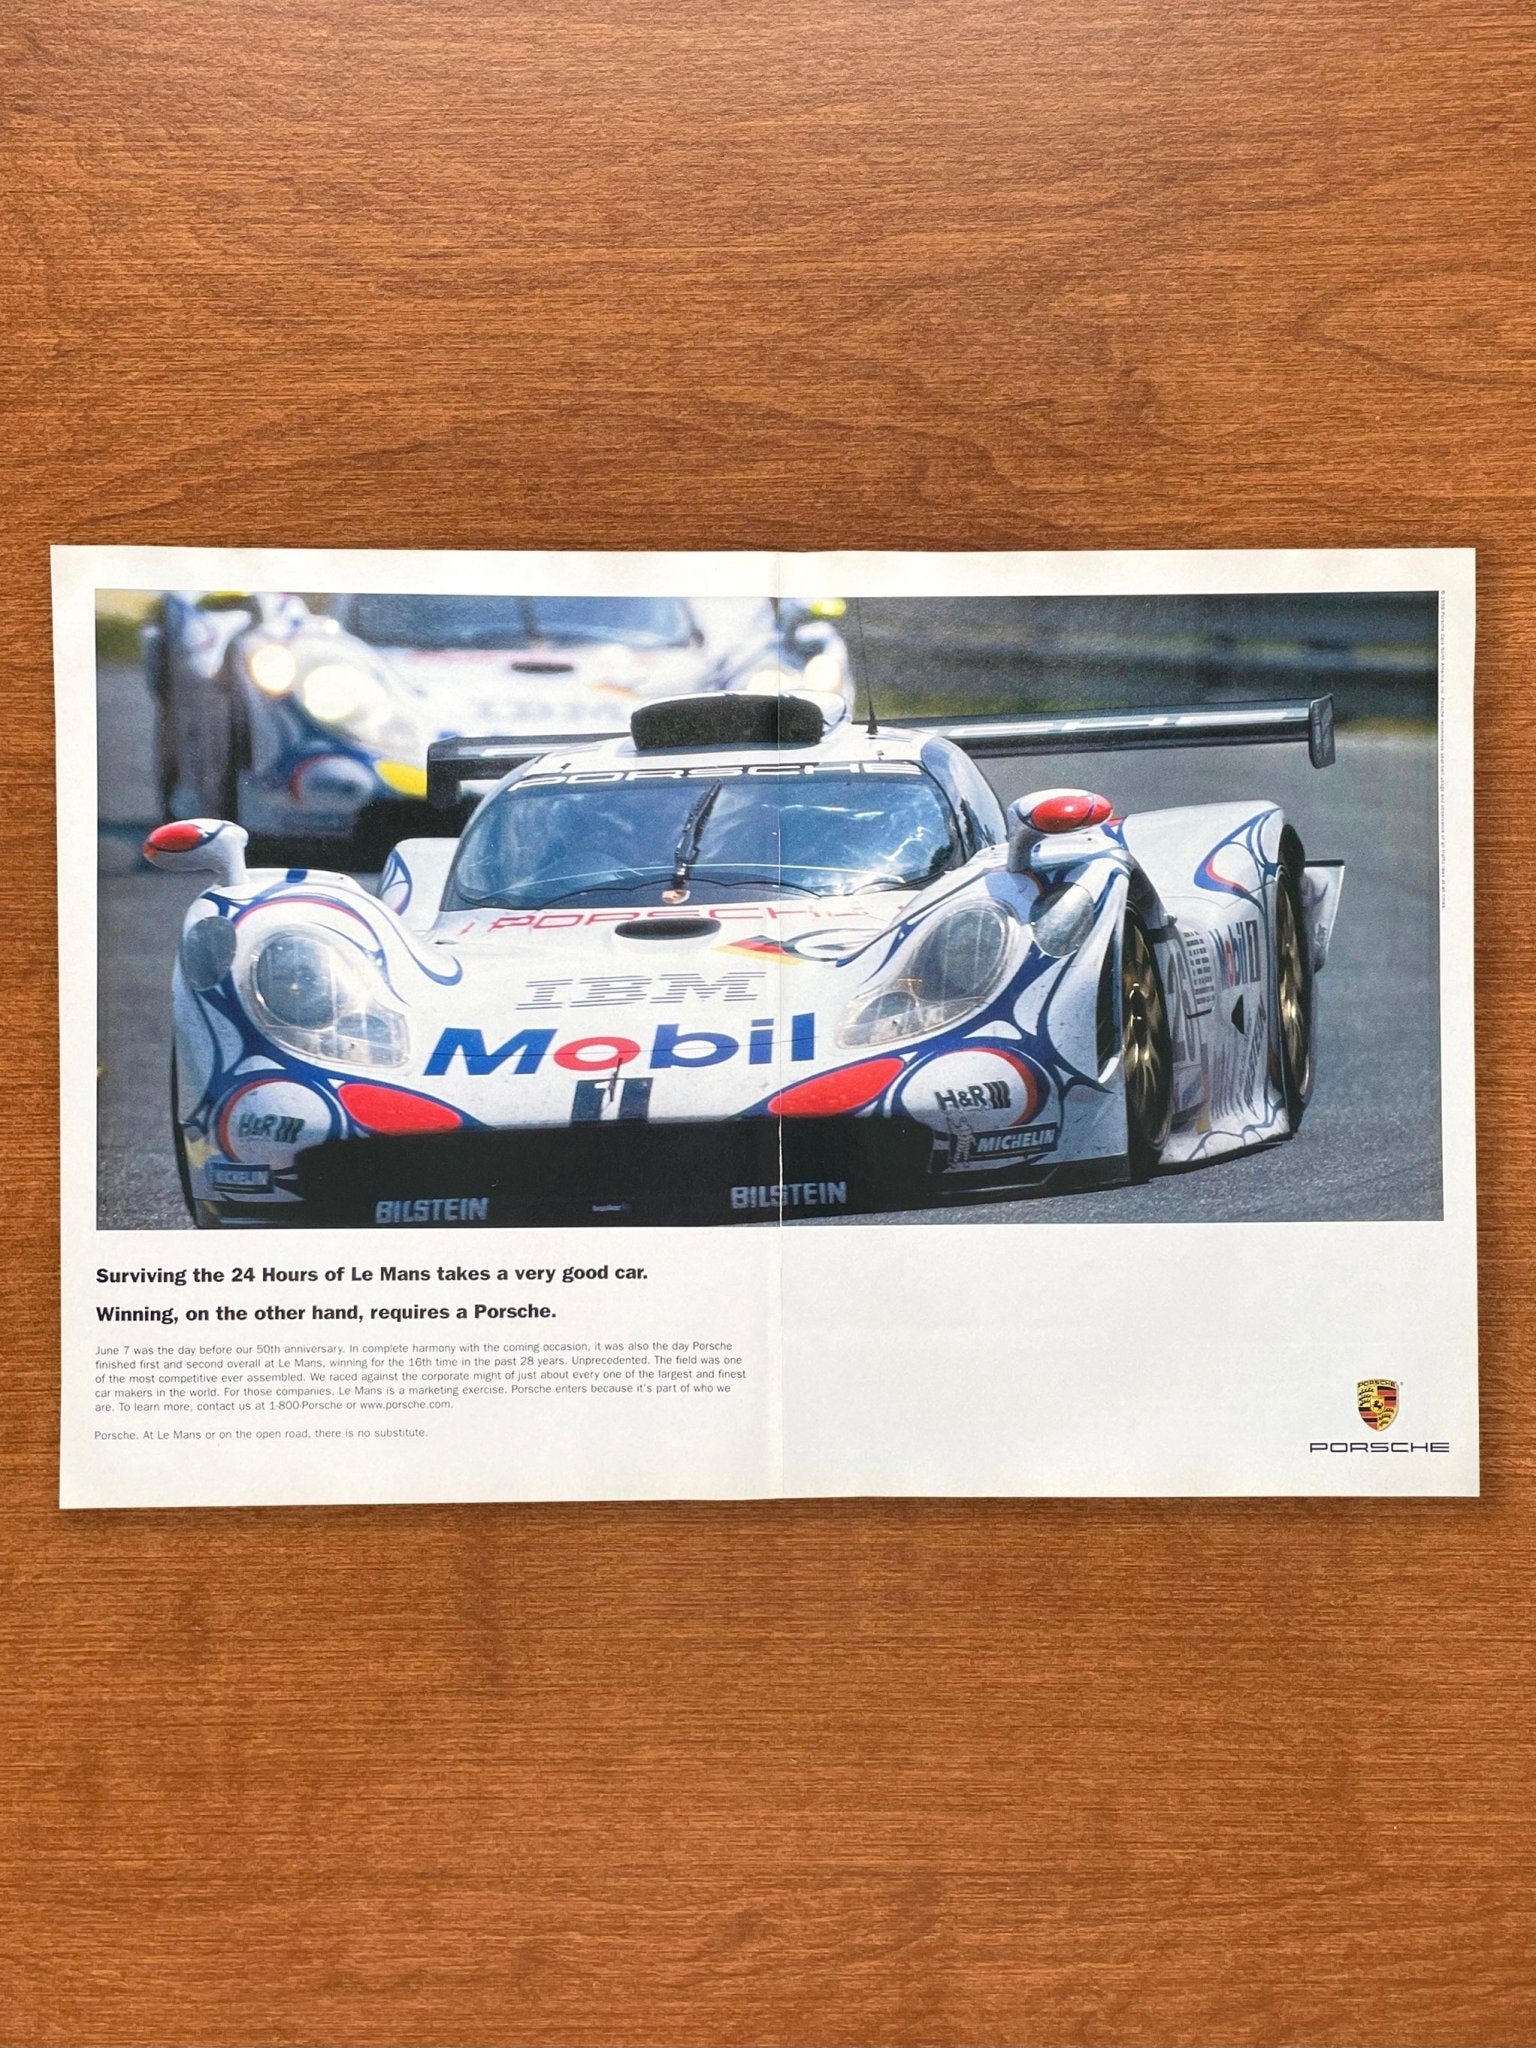 1998 Porsche 911 GT1-98 "24 Hours of Le Mans" Advertisement